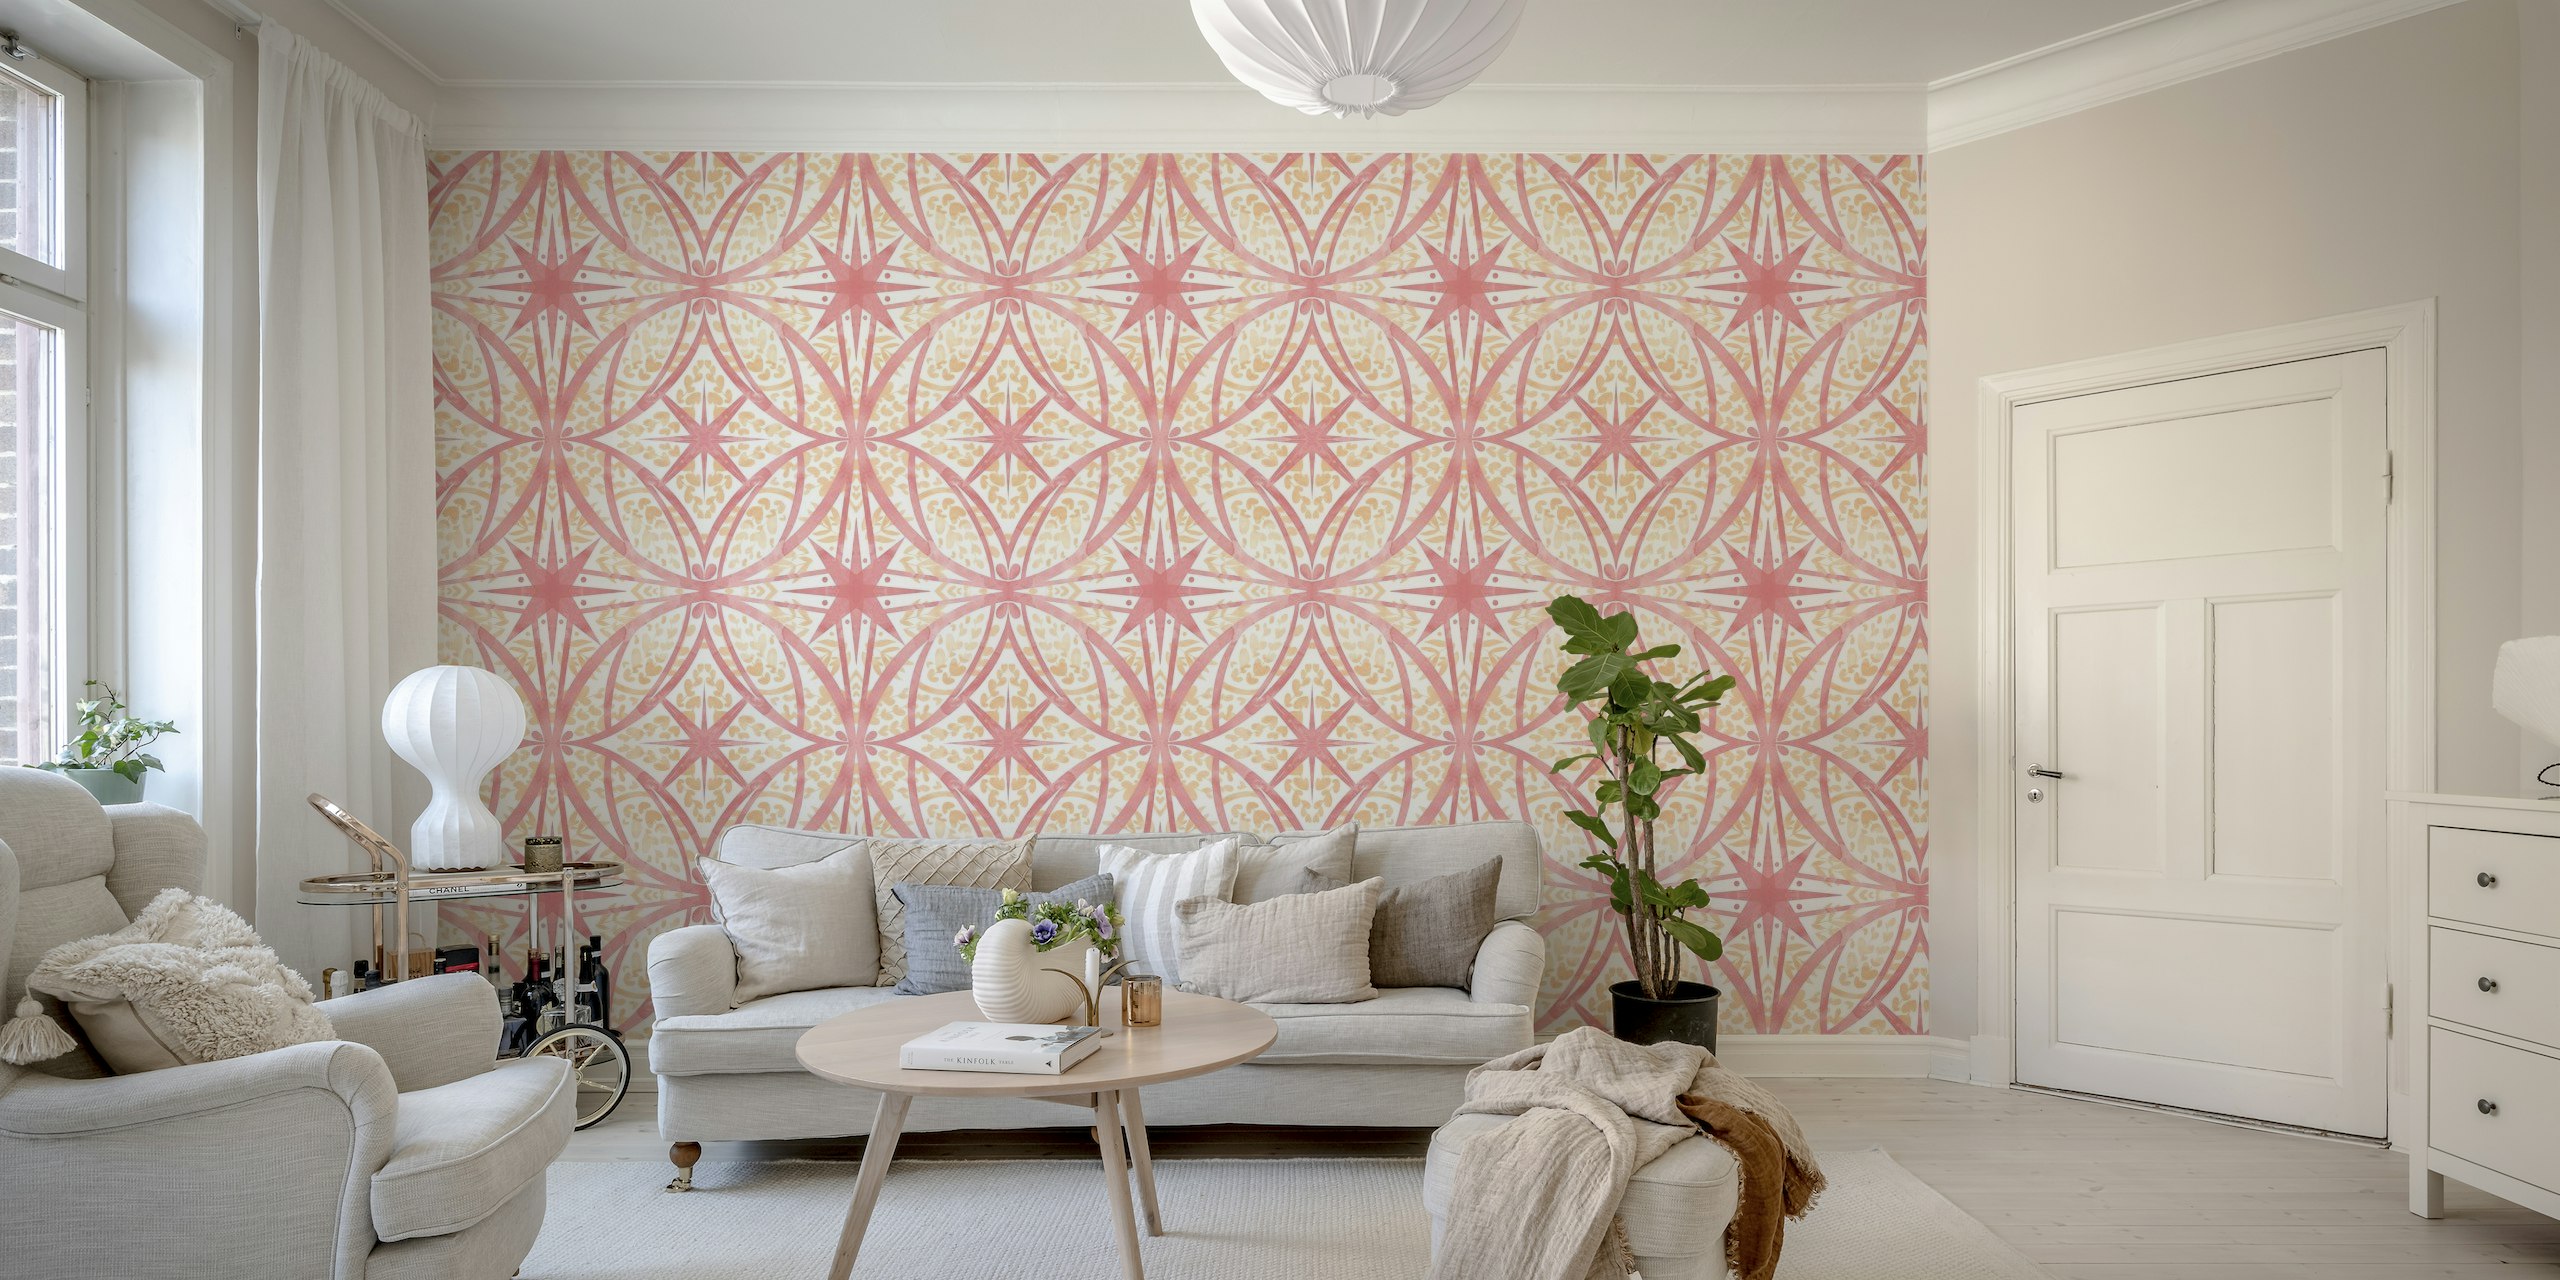 Tile circular leaves peach fuzz wallpaper